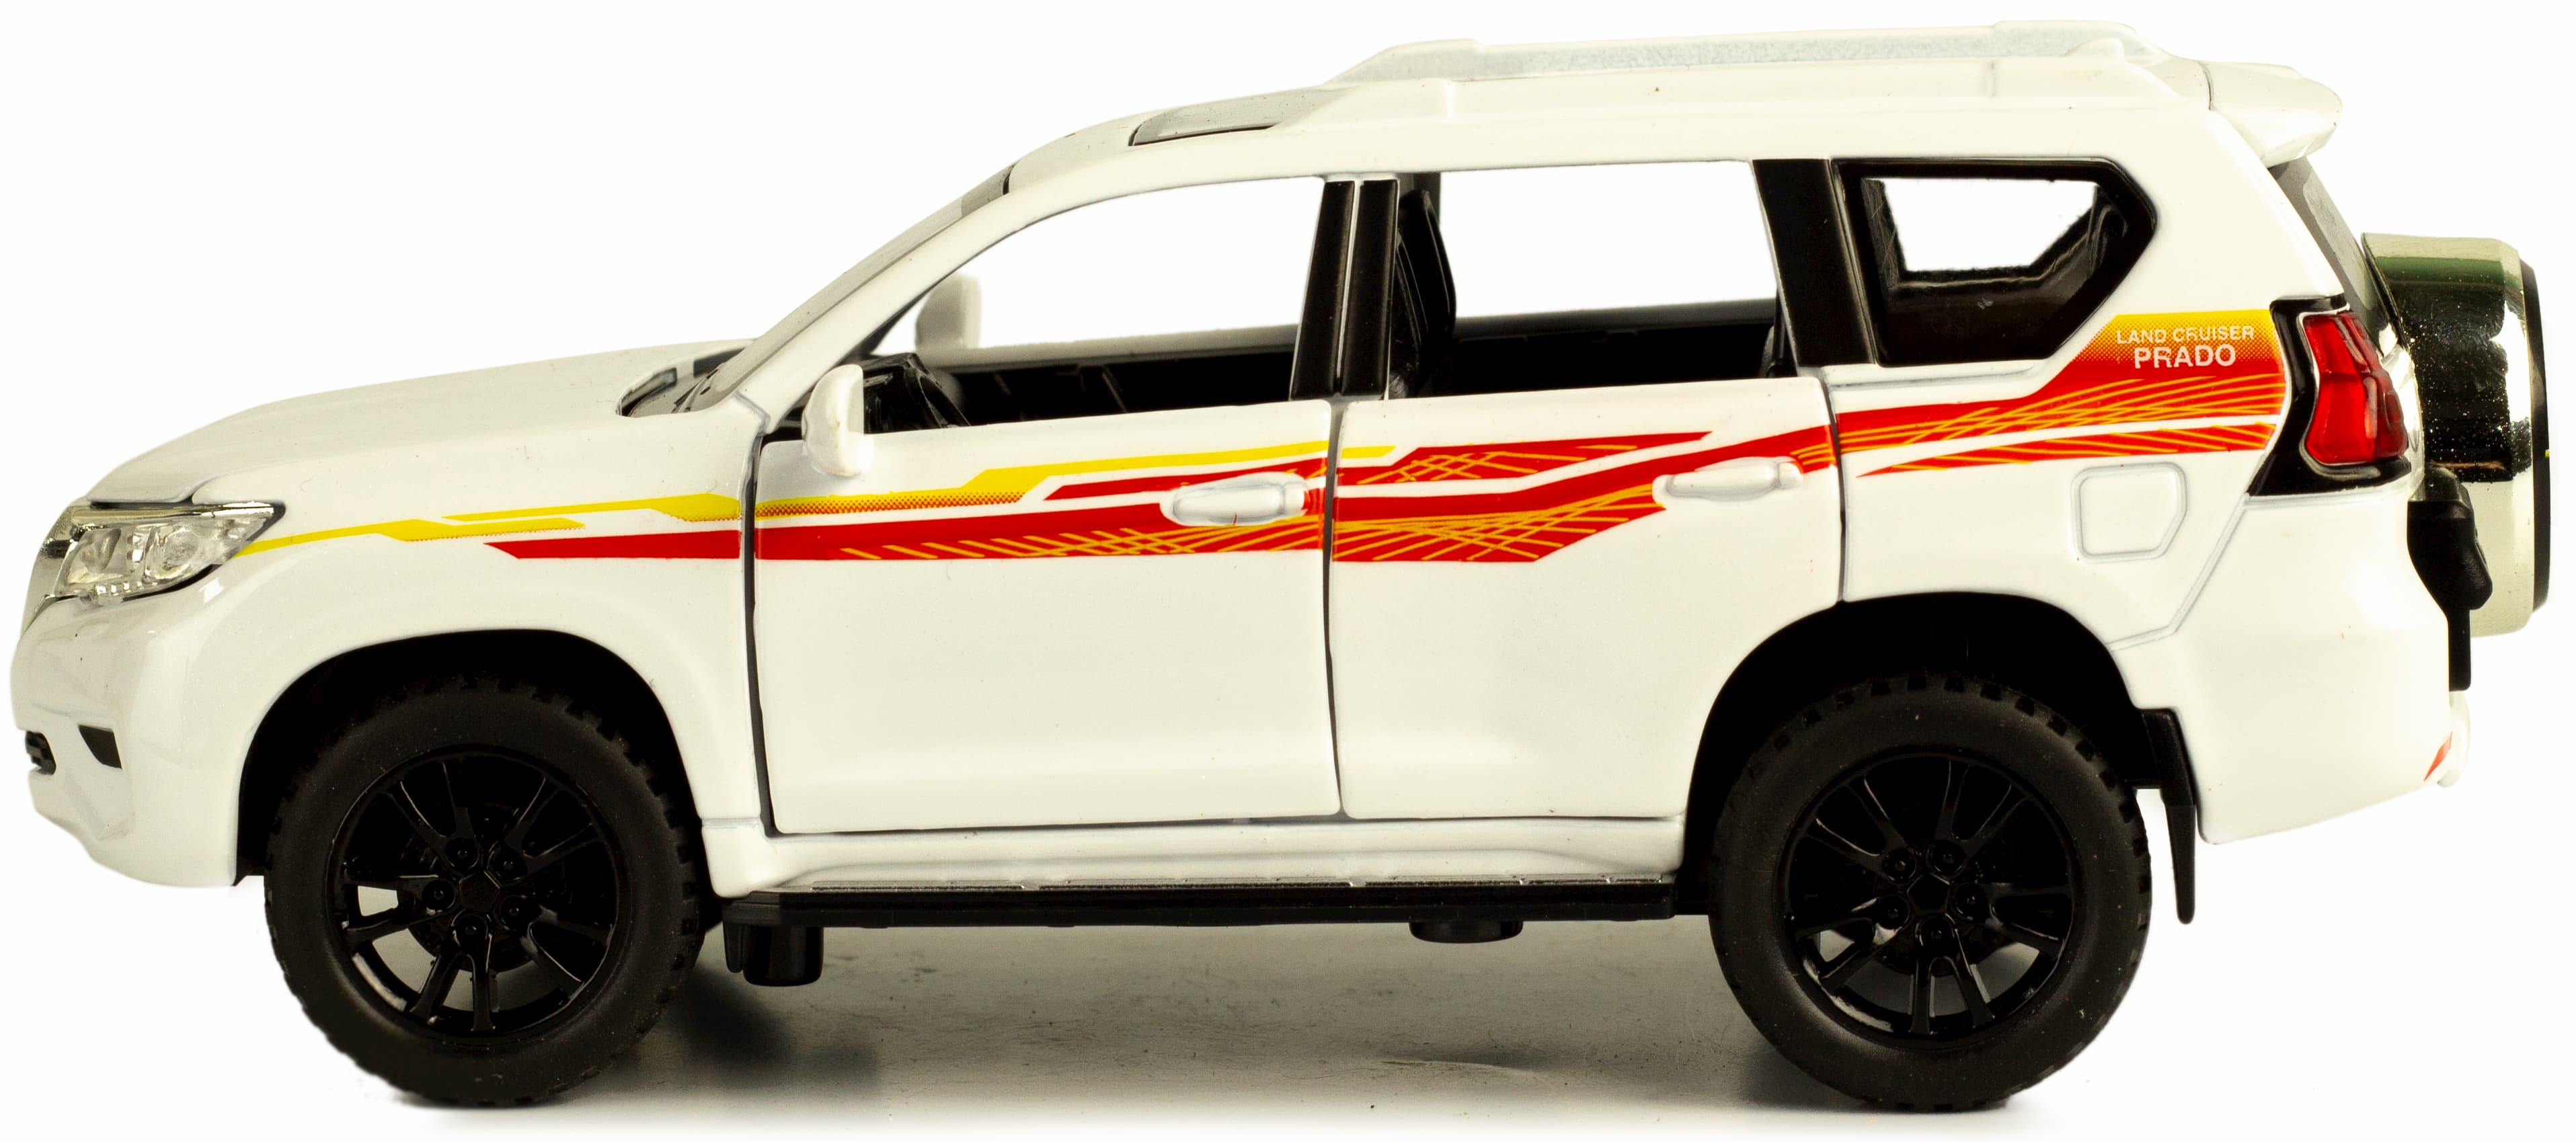 Металлическая машинка Double Horses 1:32 «Toyota Land Cruiser Prado» 32551, 16.2 см. инерционная, свет, звук / Микс